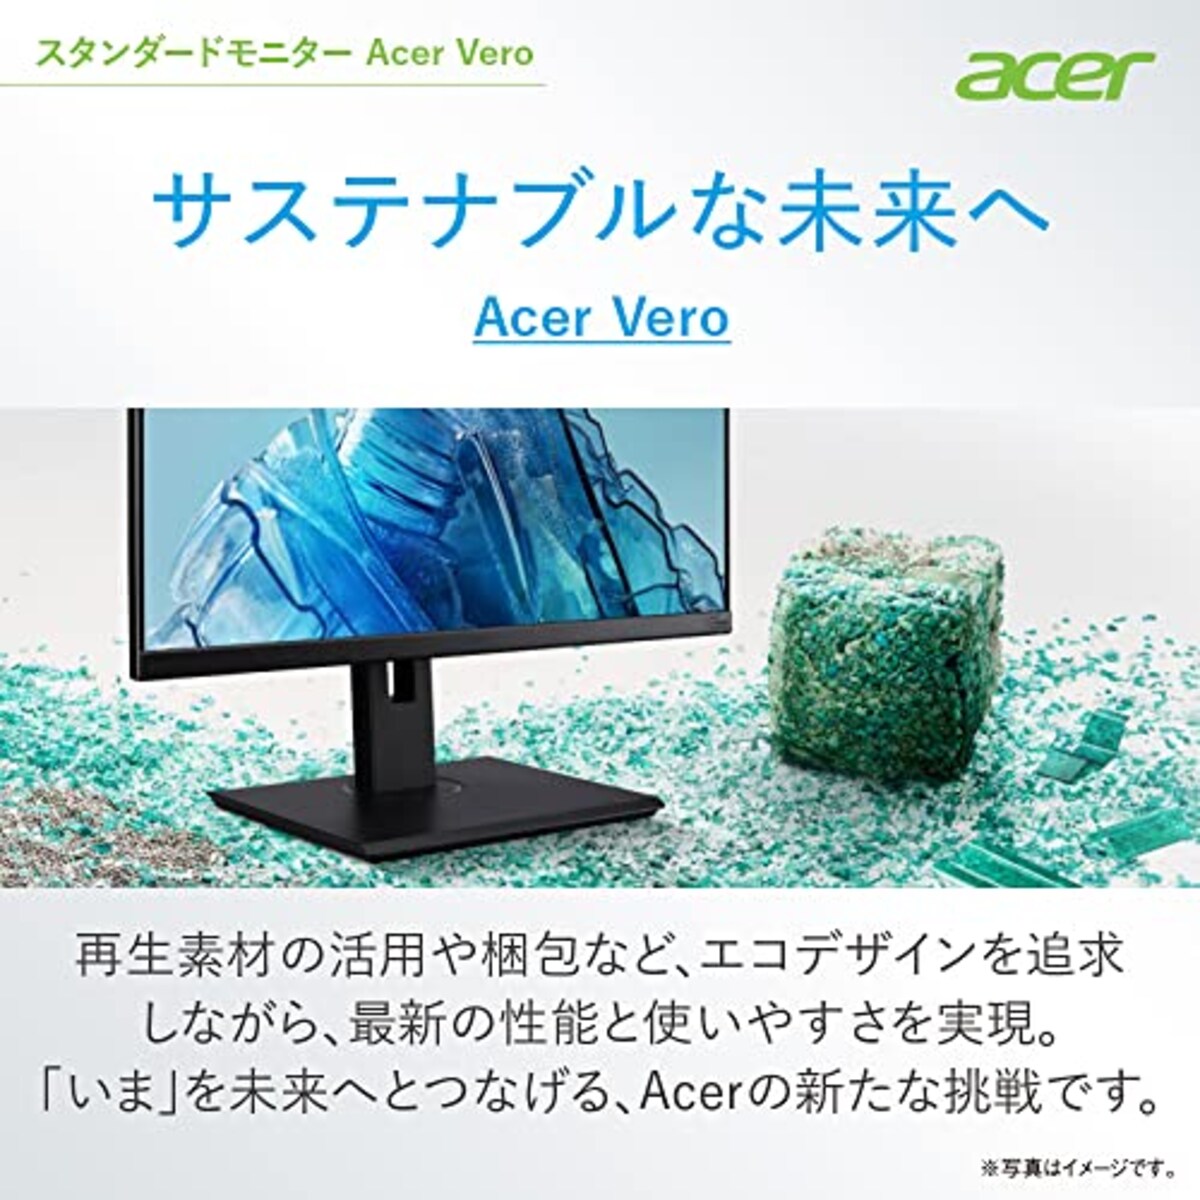  日本エイサー Acer モニター Vero BR277bmiprx 27インチ IPS 非光沢 フルHD 75Hz 4ms(GTG)Adaptive-Sync EPEAT Silver取得 VESAマウント対応 スピーカー内蔵 高さ調整 ピボット スイベル チルト スピーカー搭載 フリッカーレス ブルーライト軽減 フレームレスデザイン画像2 